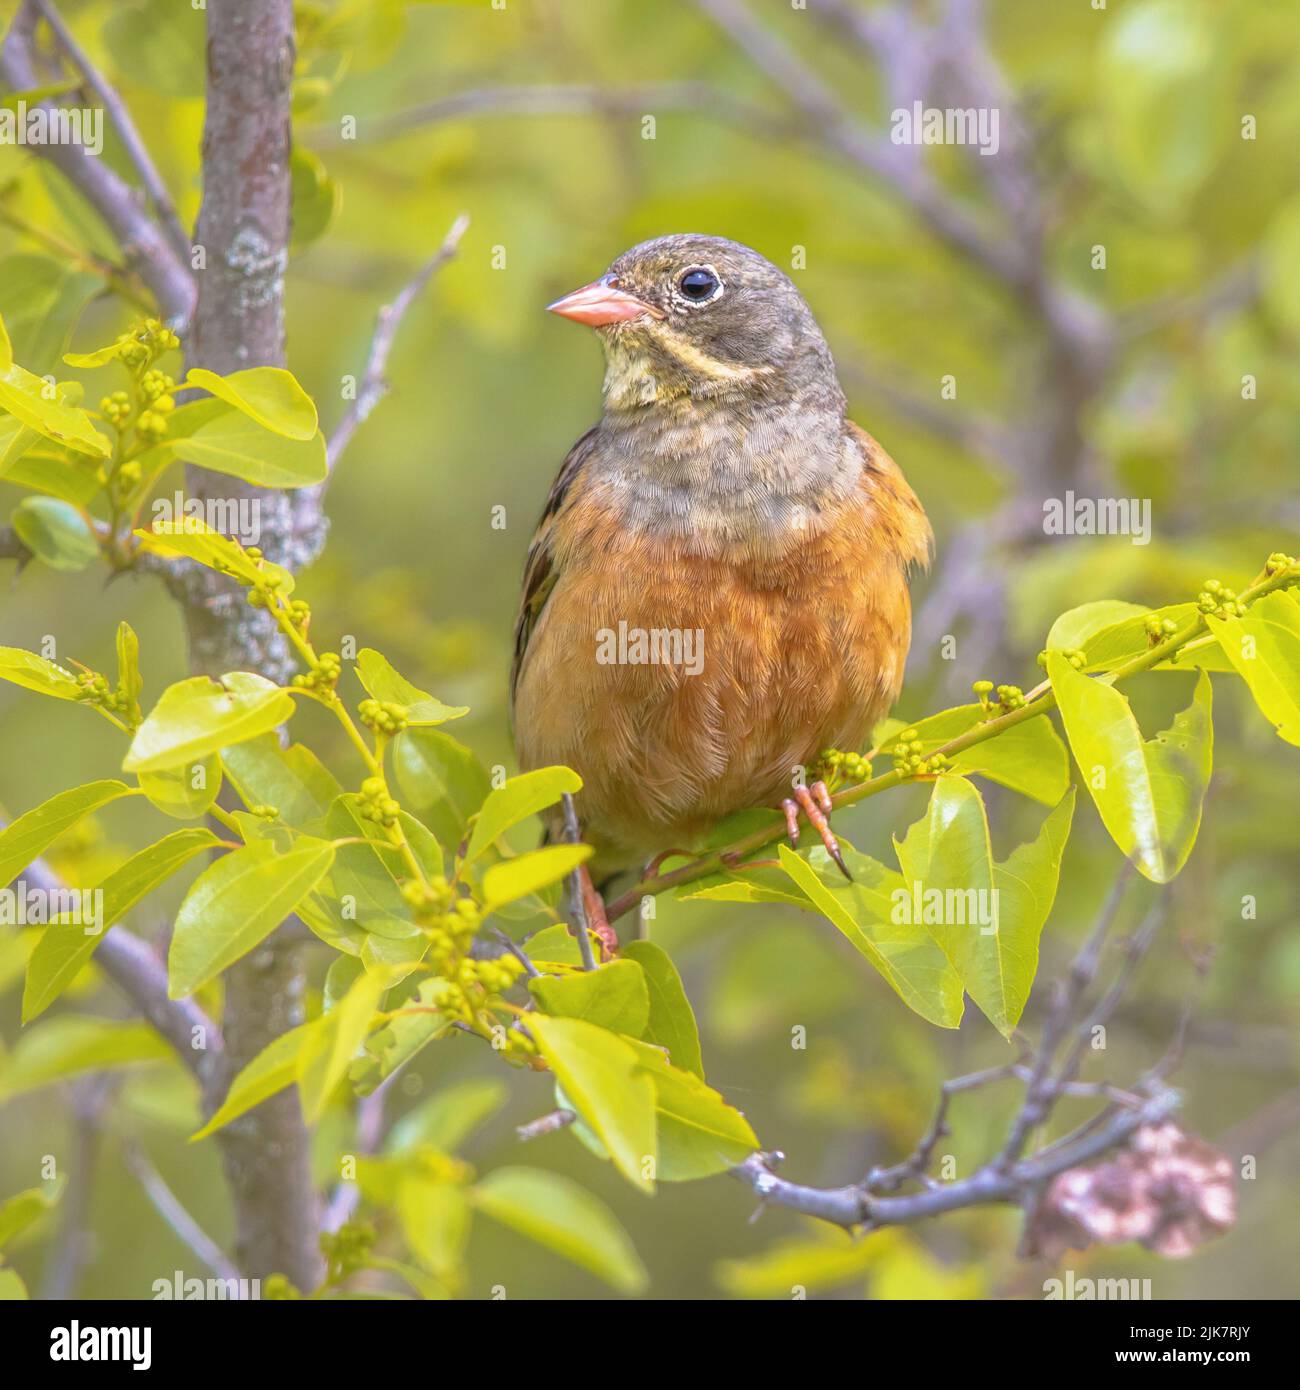 Ortolan Bunting (Emberiza hortulana) perchée dans un arbre. C'est un oiseau eurasien de la famille des Emberizidae. Bulgarie. Faune scène de la nature dans Banque D'Images